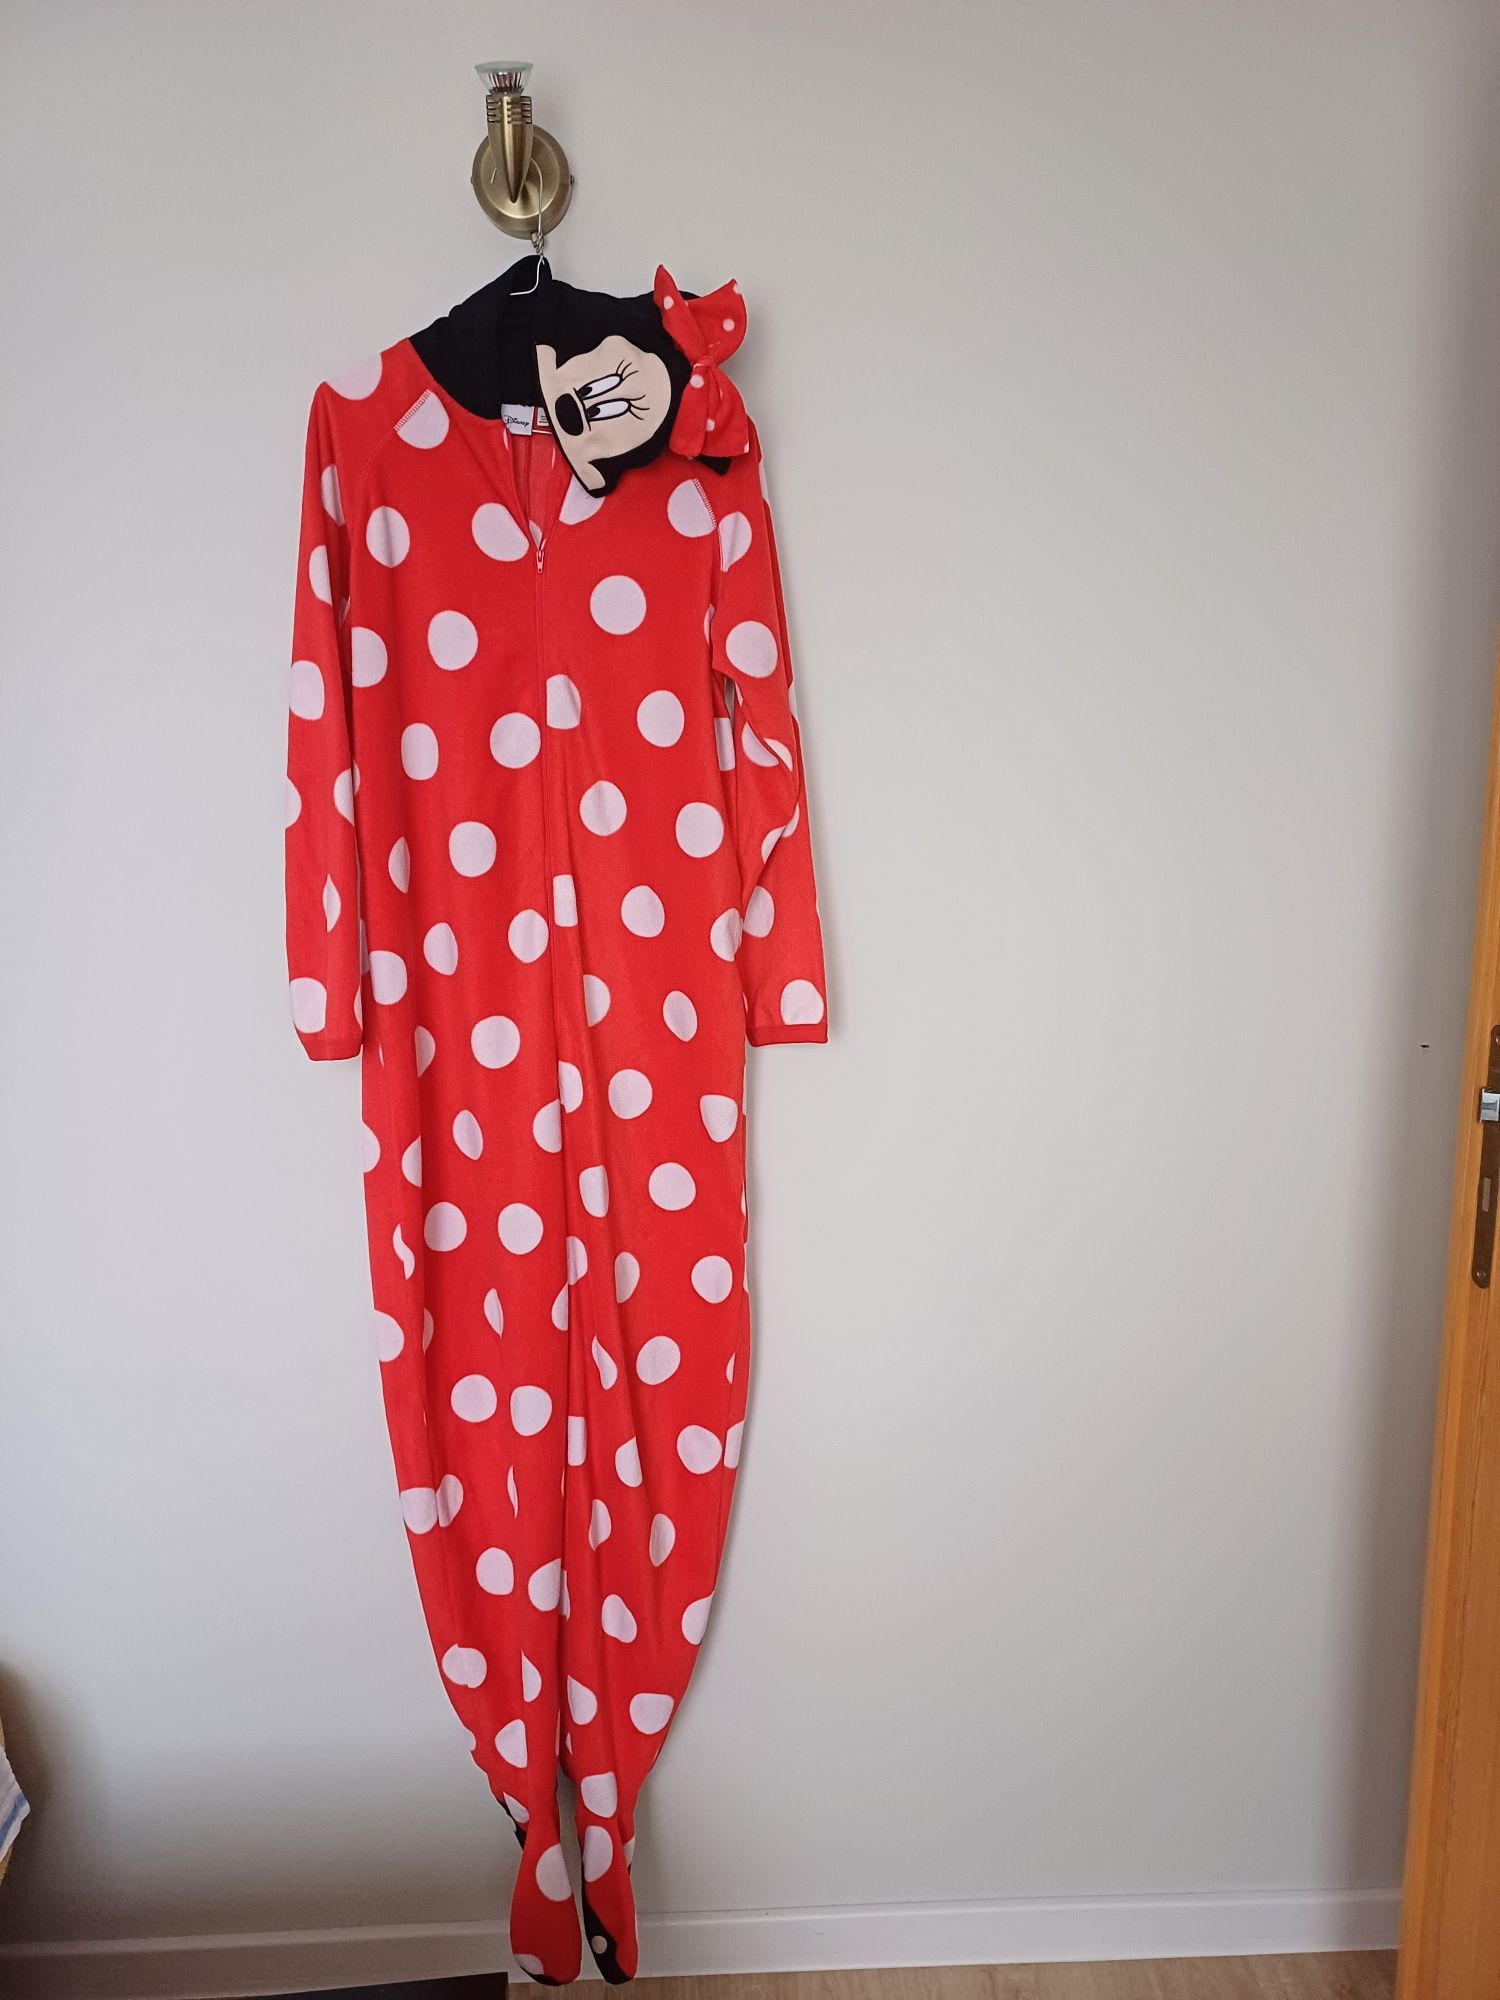 Piżama, pajacyk Myszka Miki rozmiar S/36-38/firmy  Disney.